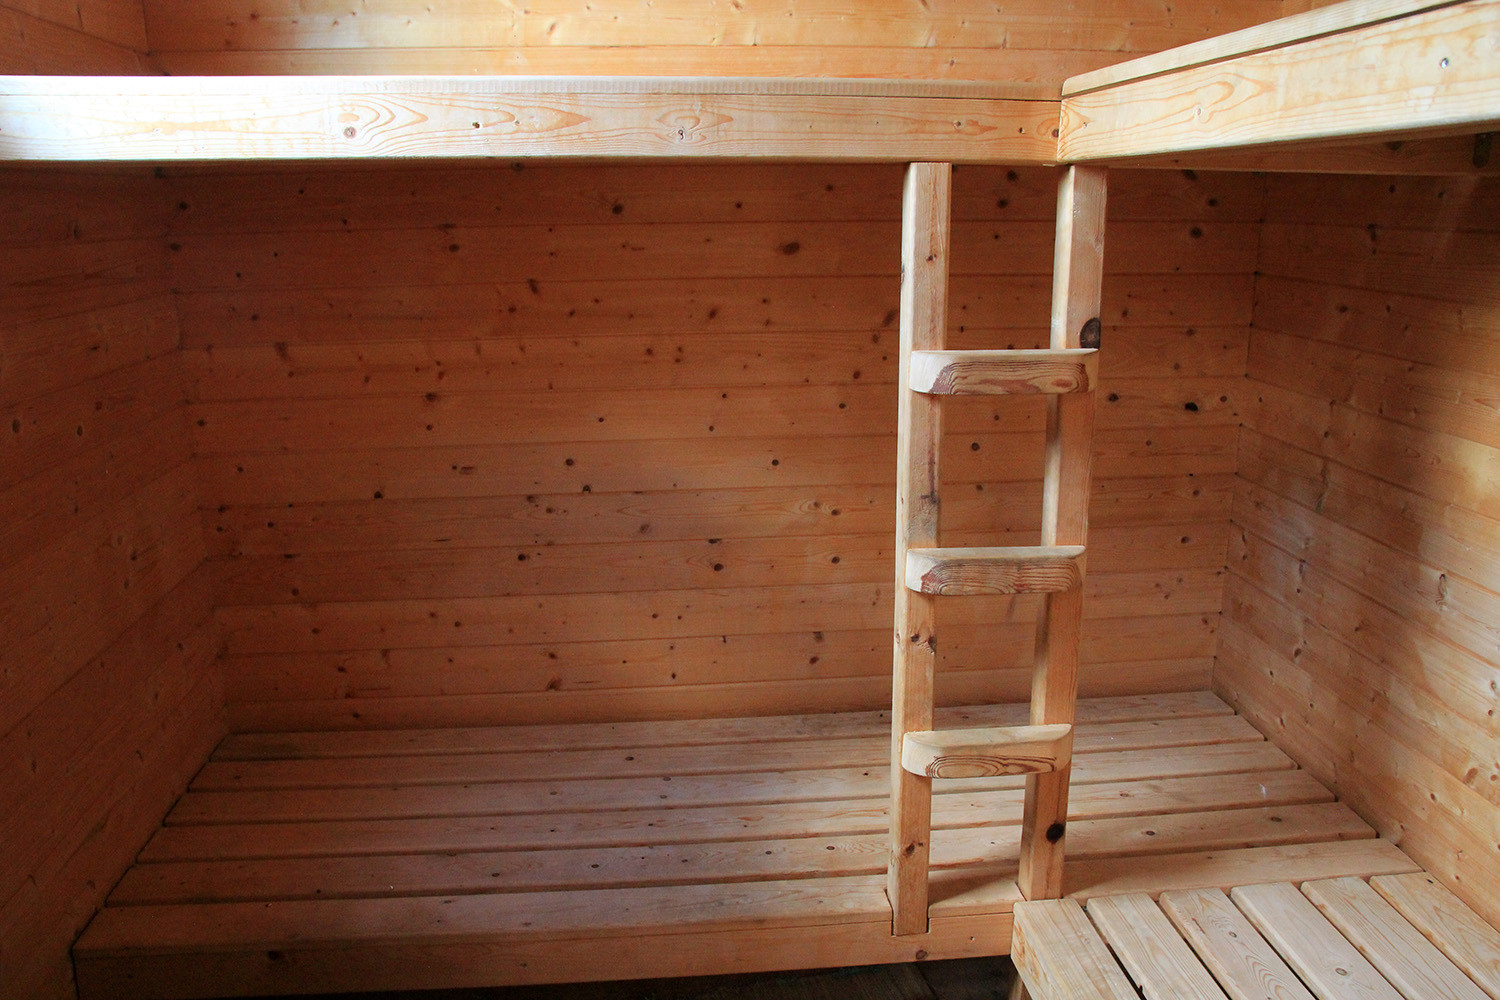 The sauna inside